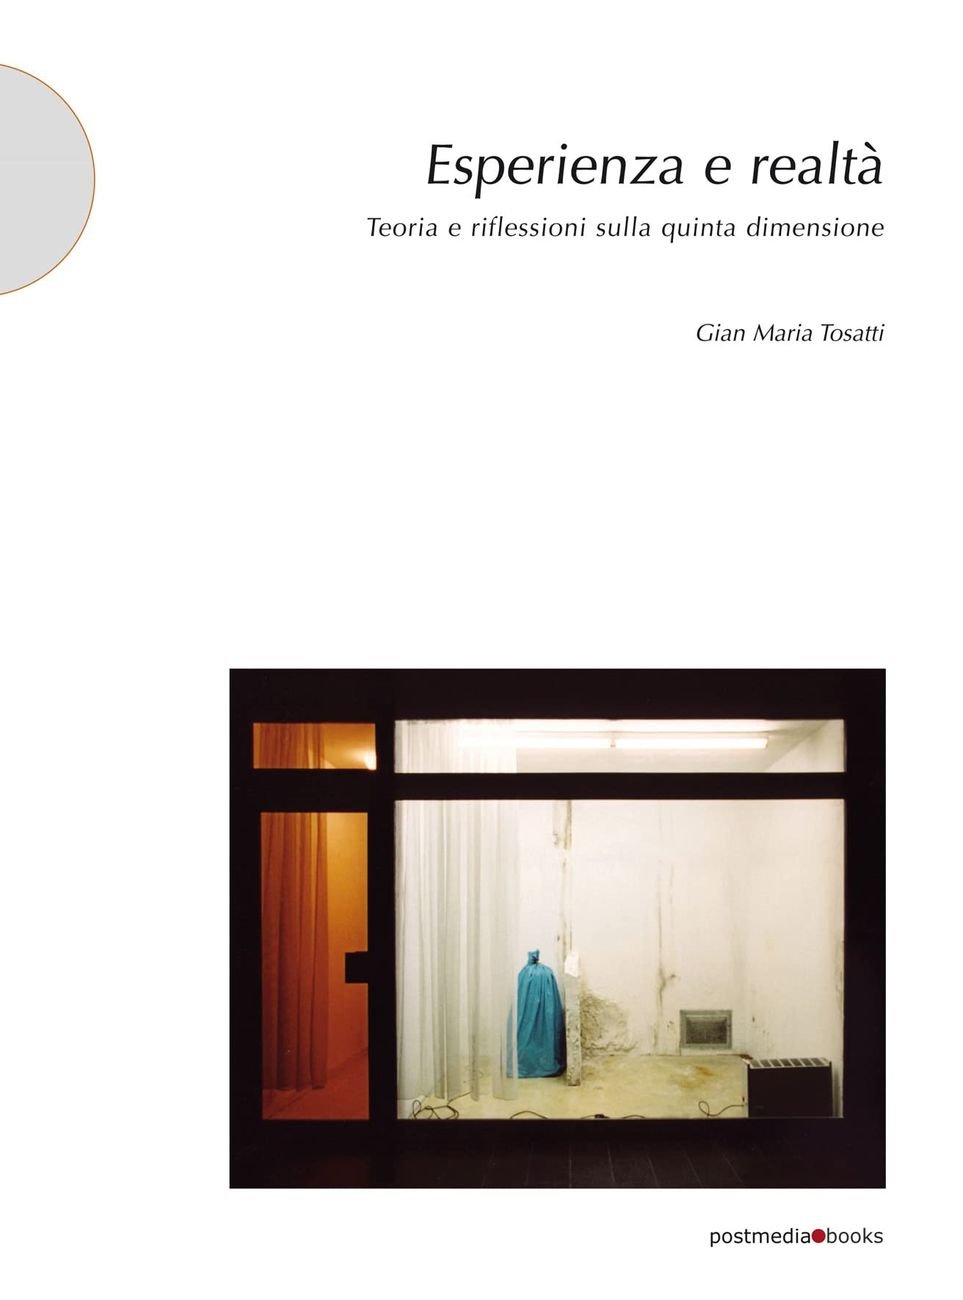 Gian Maria Tosatti – Esperienza e realtà (Postmedia Books, Milano 2021)